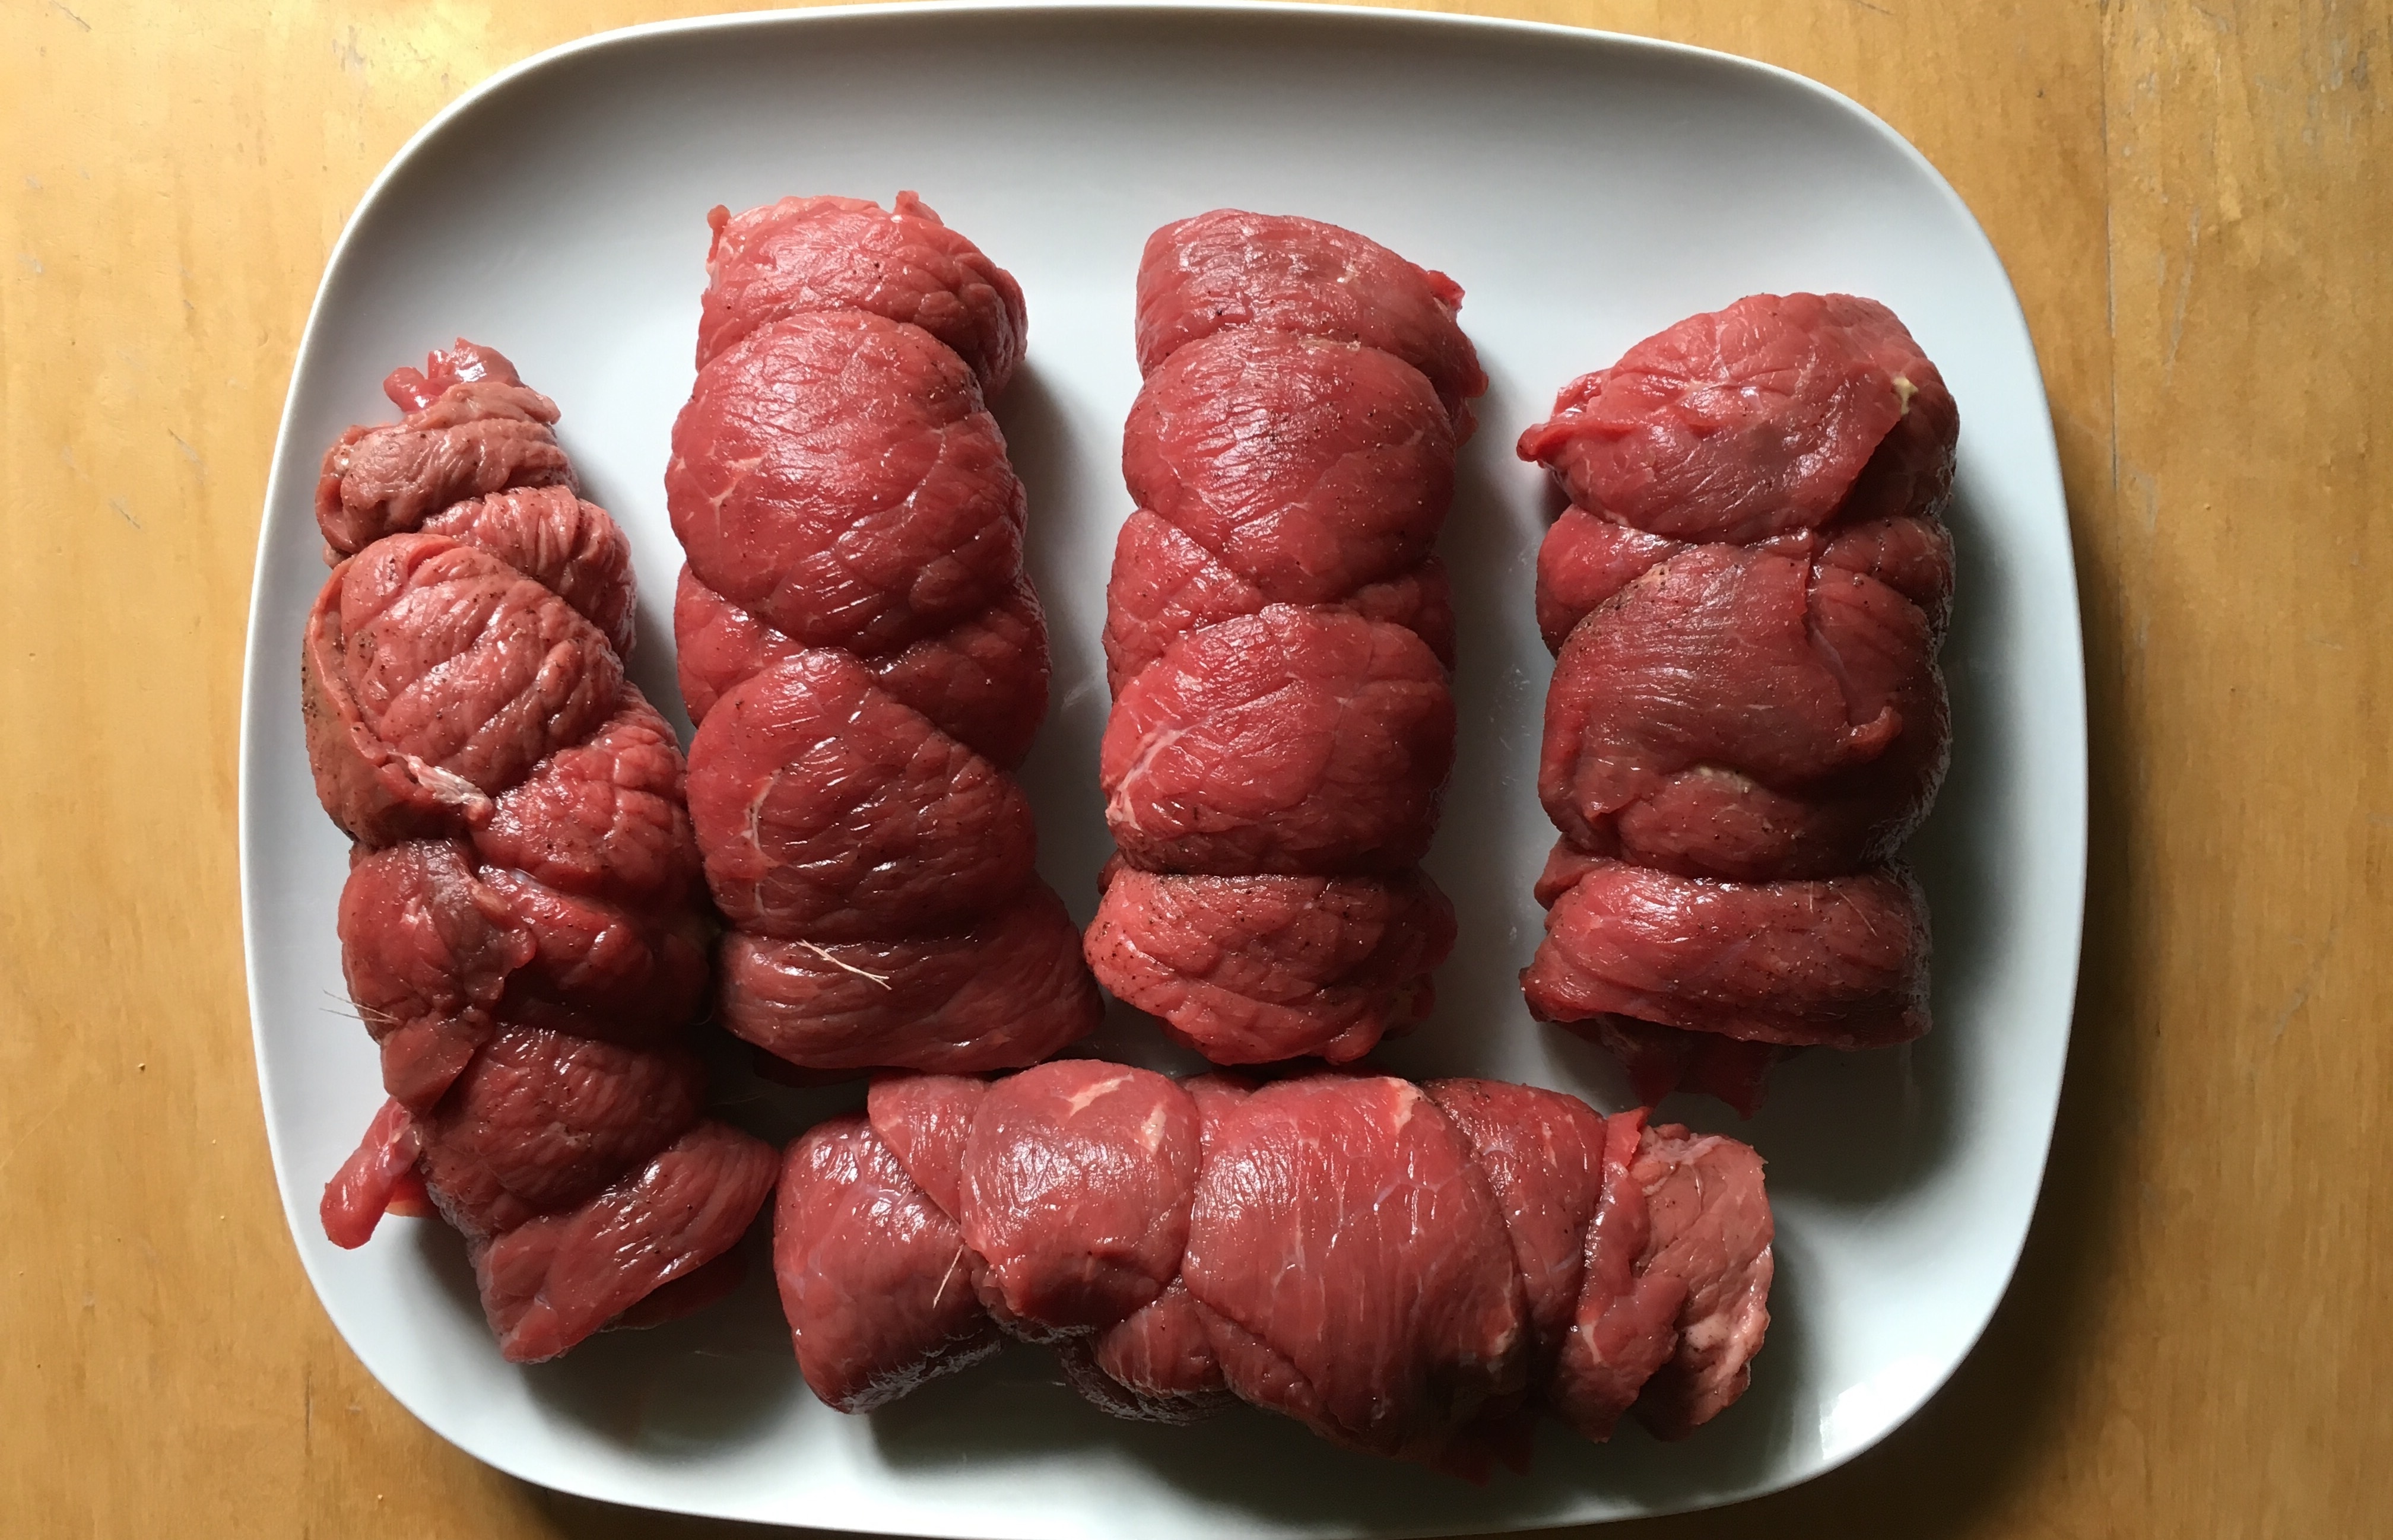 5 lean meats